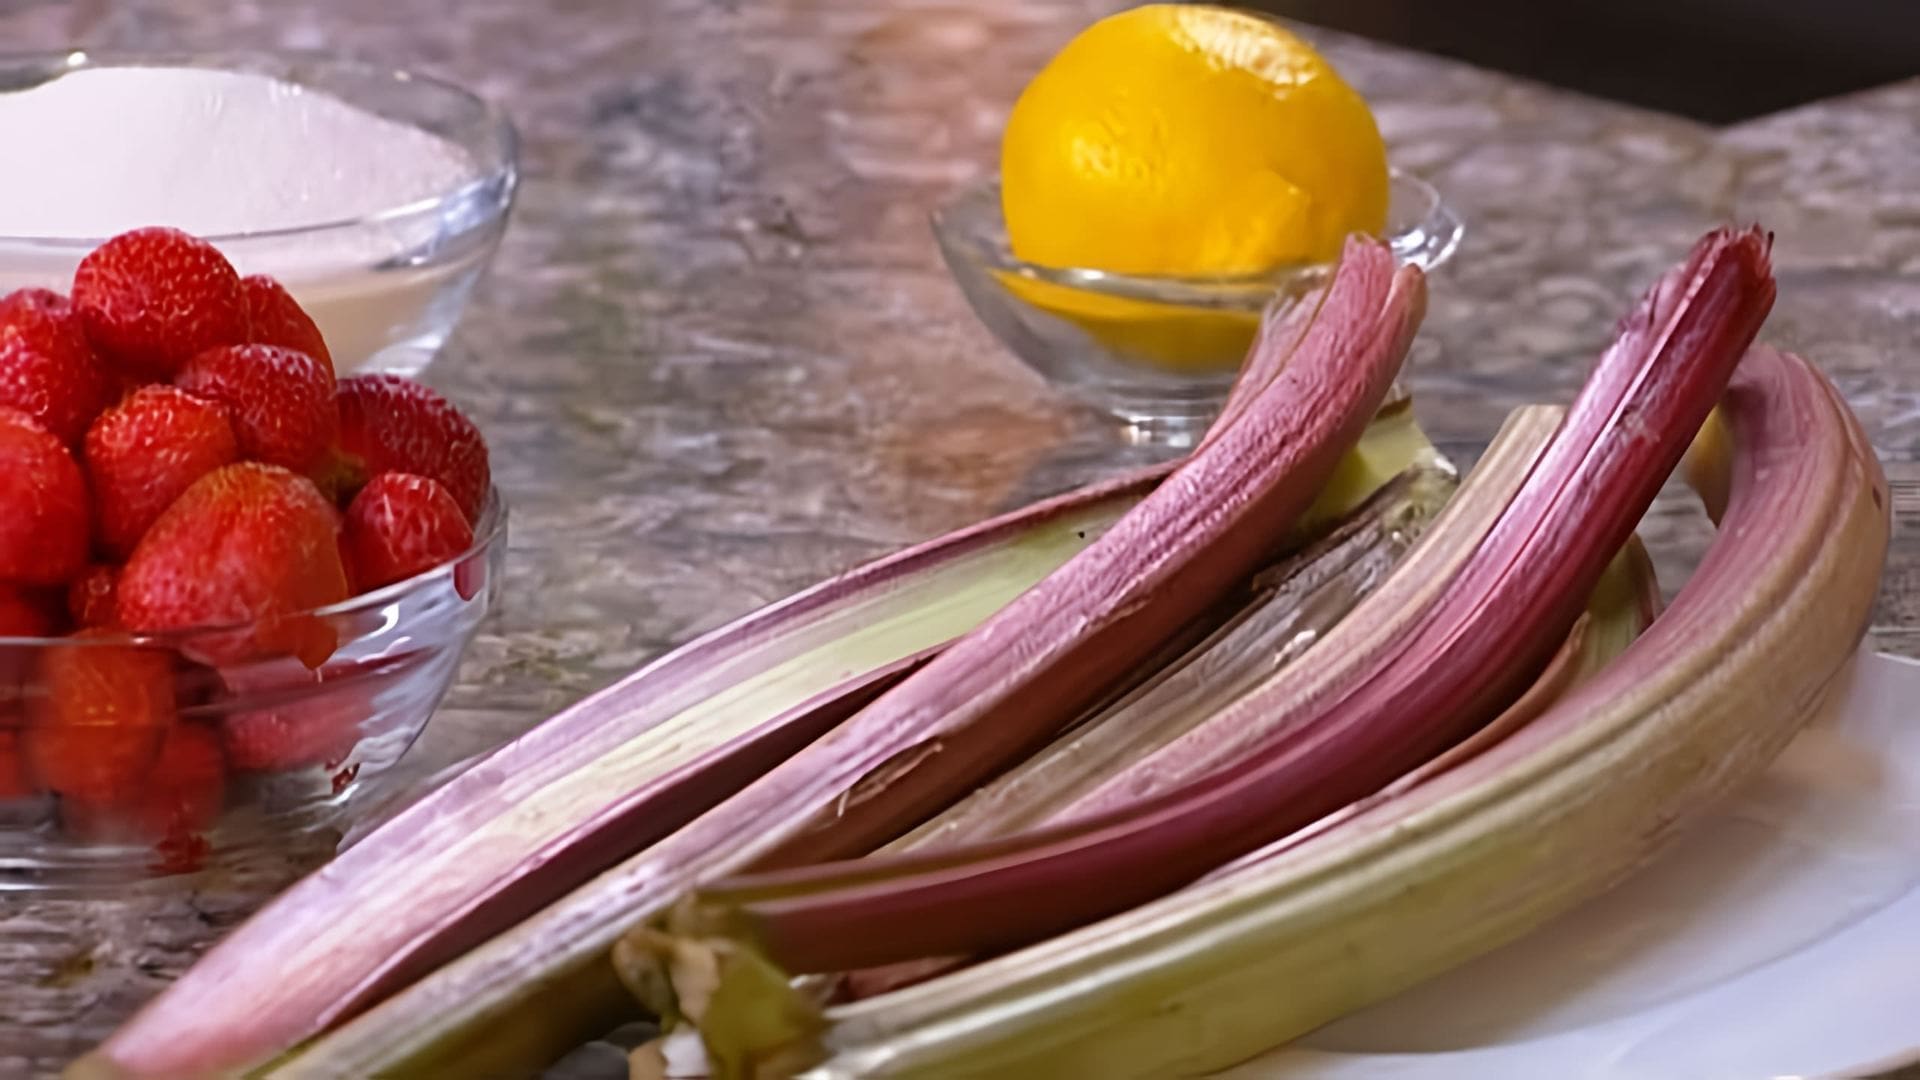 Видео как приготовить три рецепта с использованием ревеня - варенье из ревеня с клубникой, ревень с медом и маринованный ревень